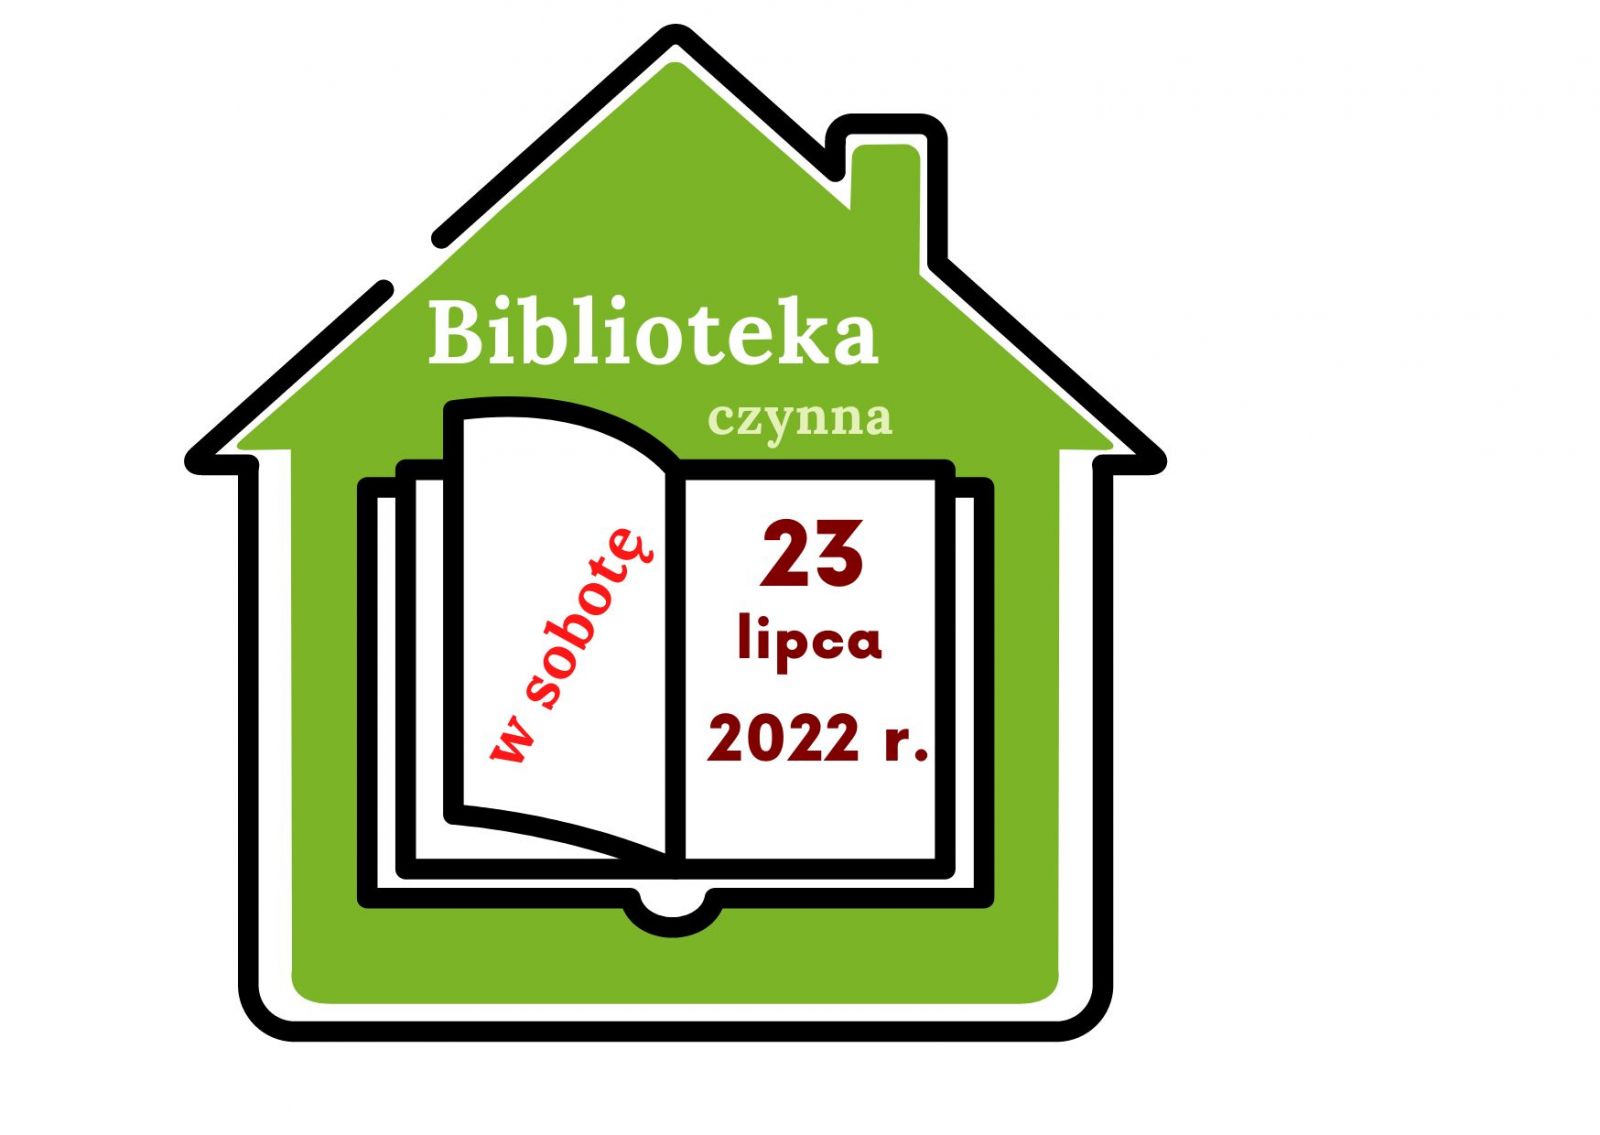 zdjęcie plakatu informującego, że biblioteka będzie czynna w sobotę 23 lipca 2022 r.